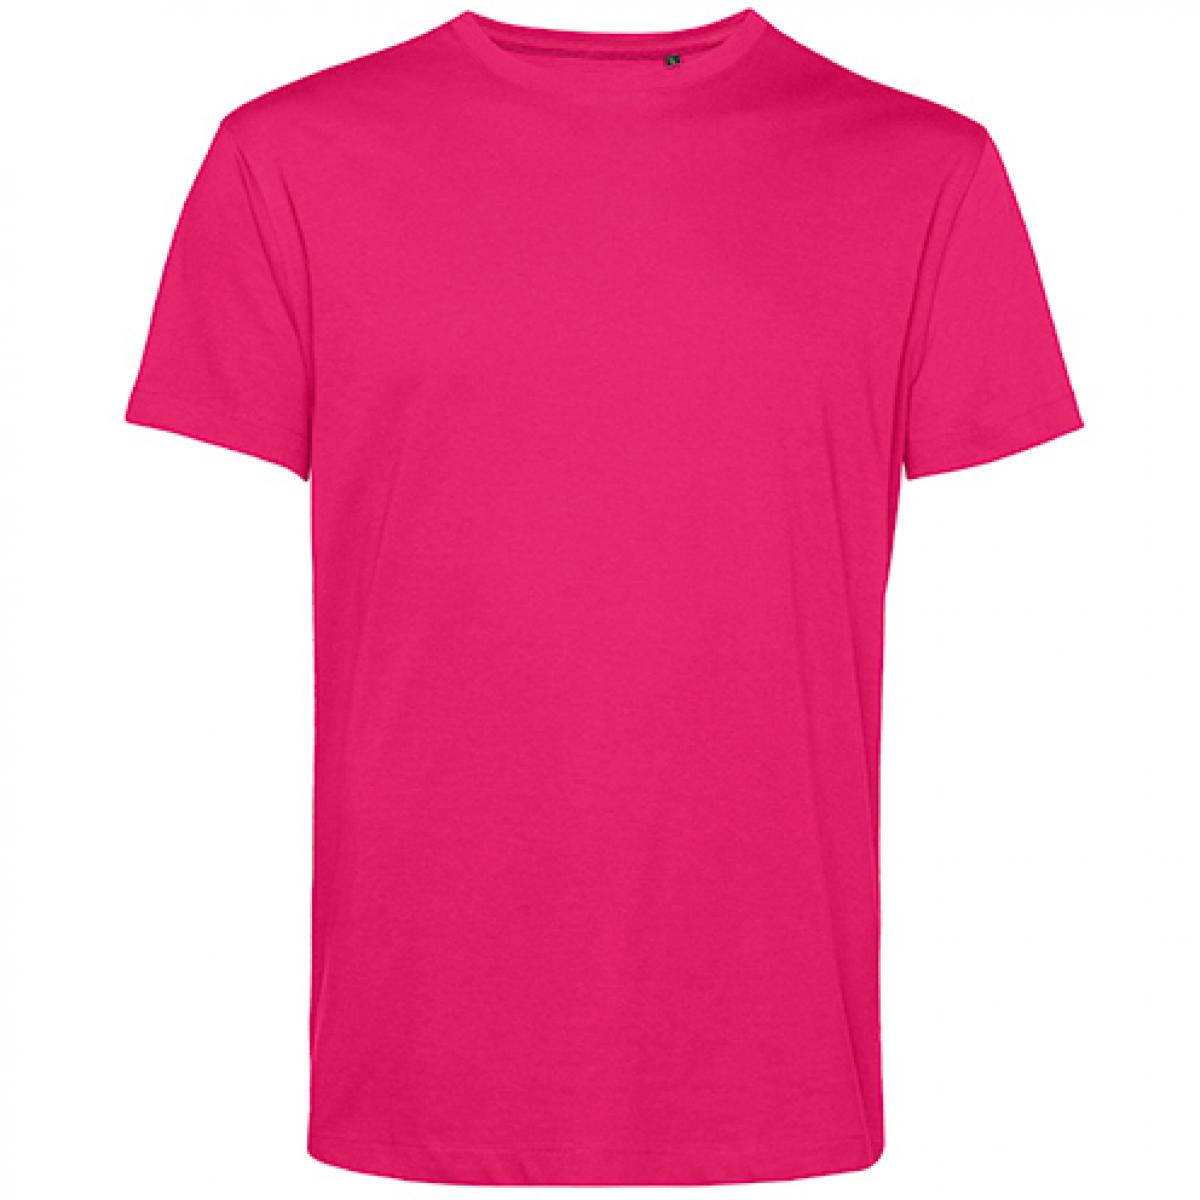 Hersteller: B&C Herstellernummer: TU01B Artikelbezeichnung: #Organic E150 T-Shirt - 100 % sanforisierte Bio-Baumwolle Farbe: Magenta Pink